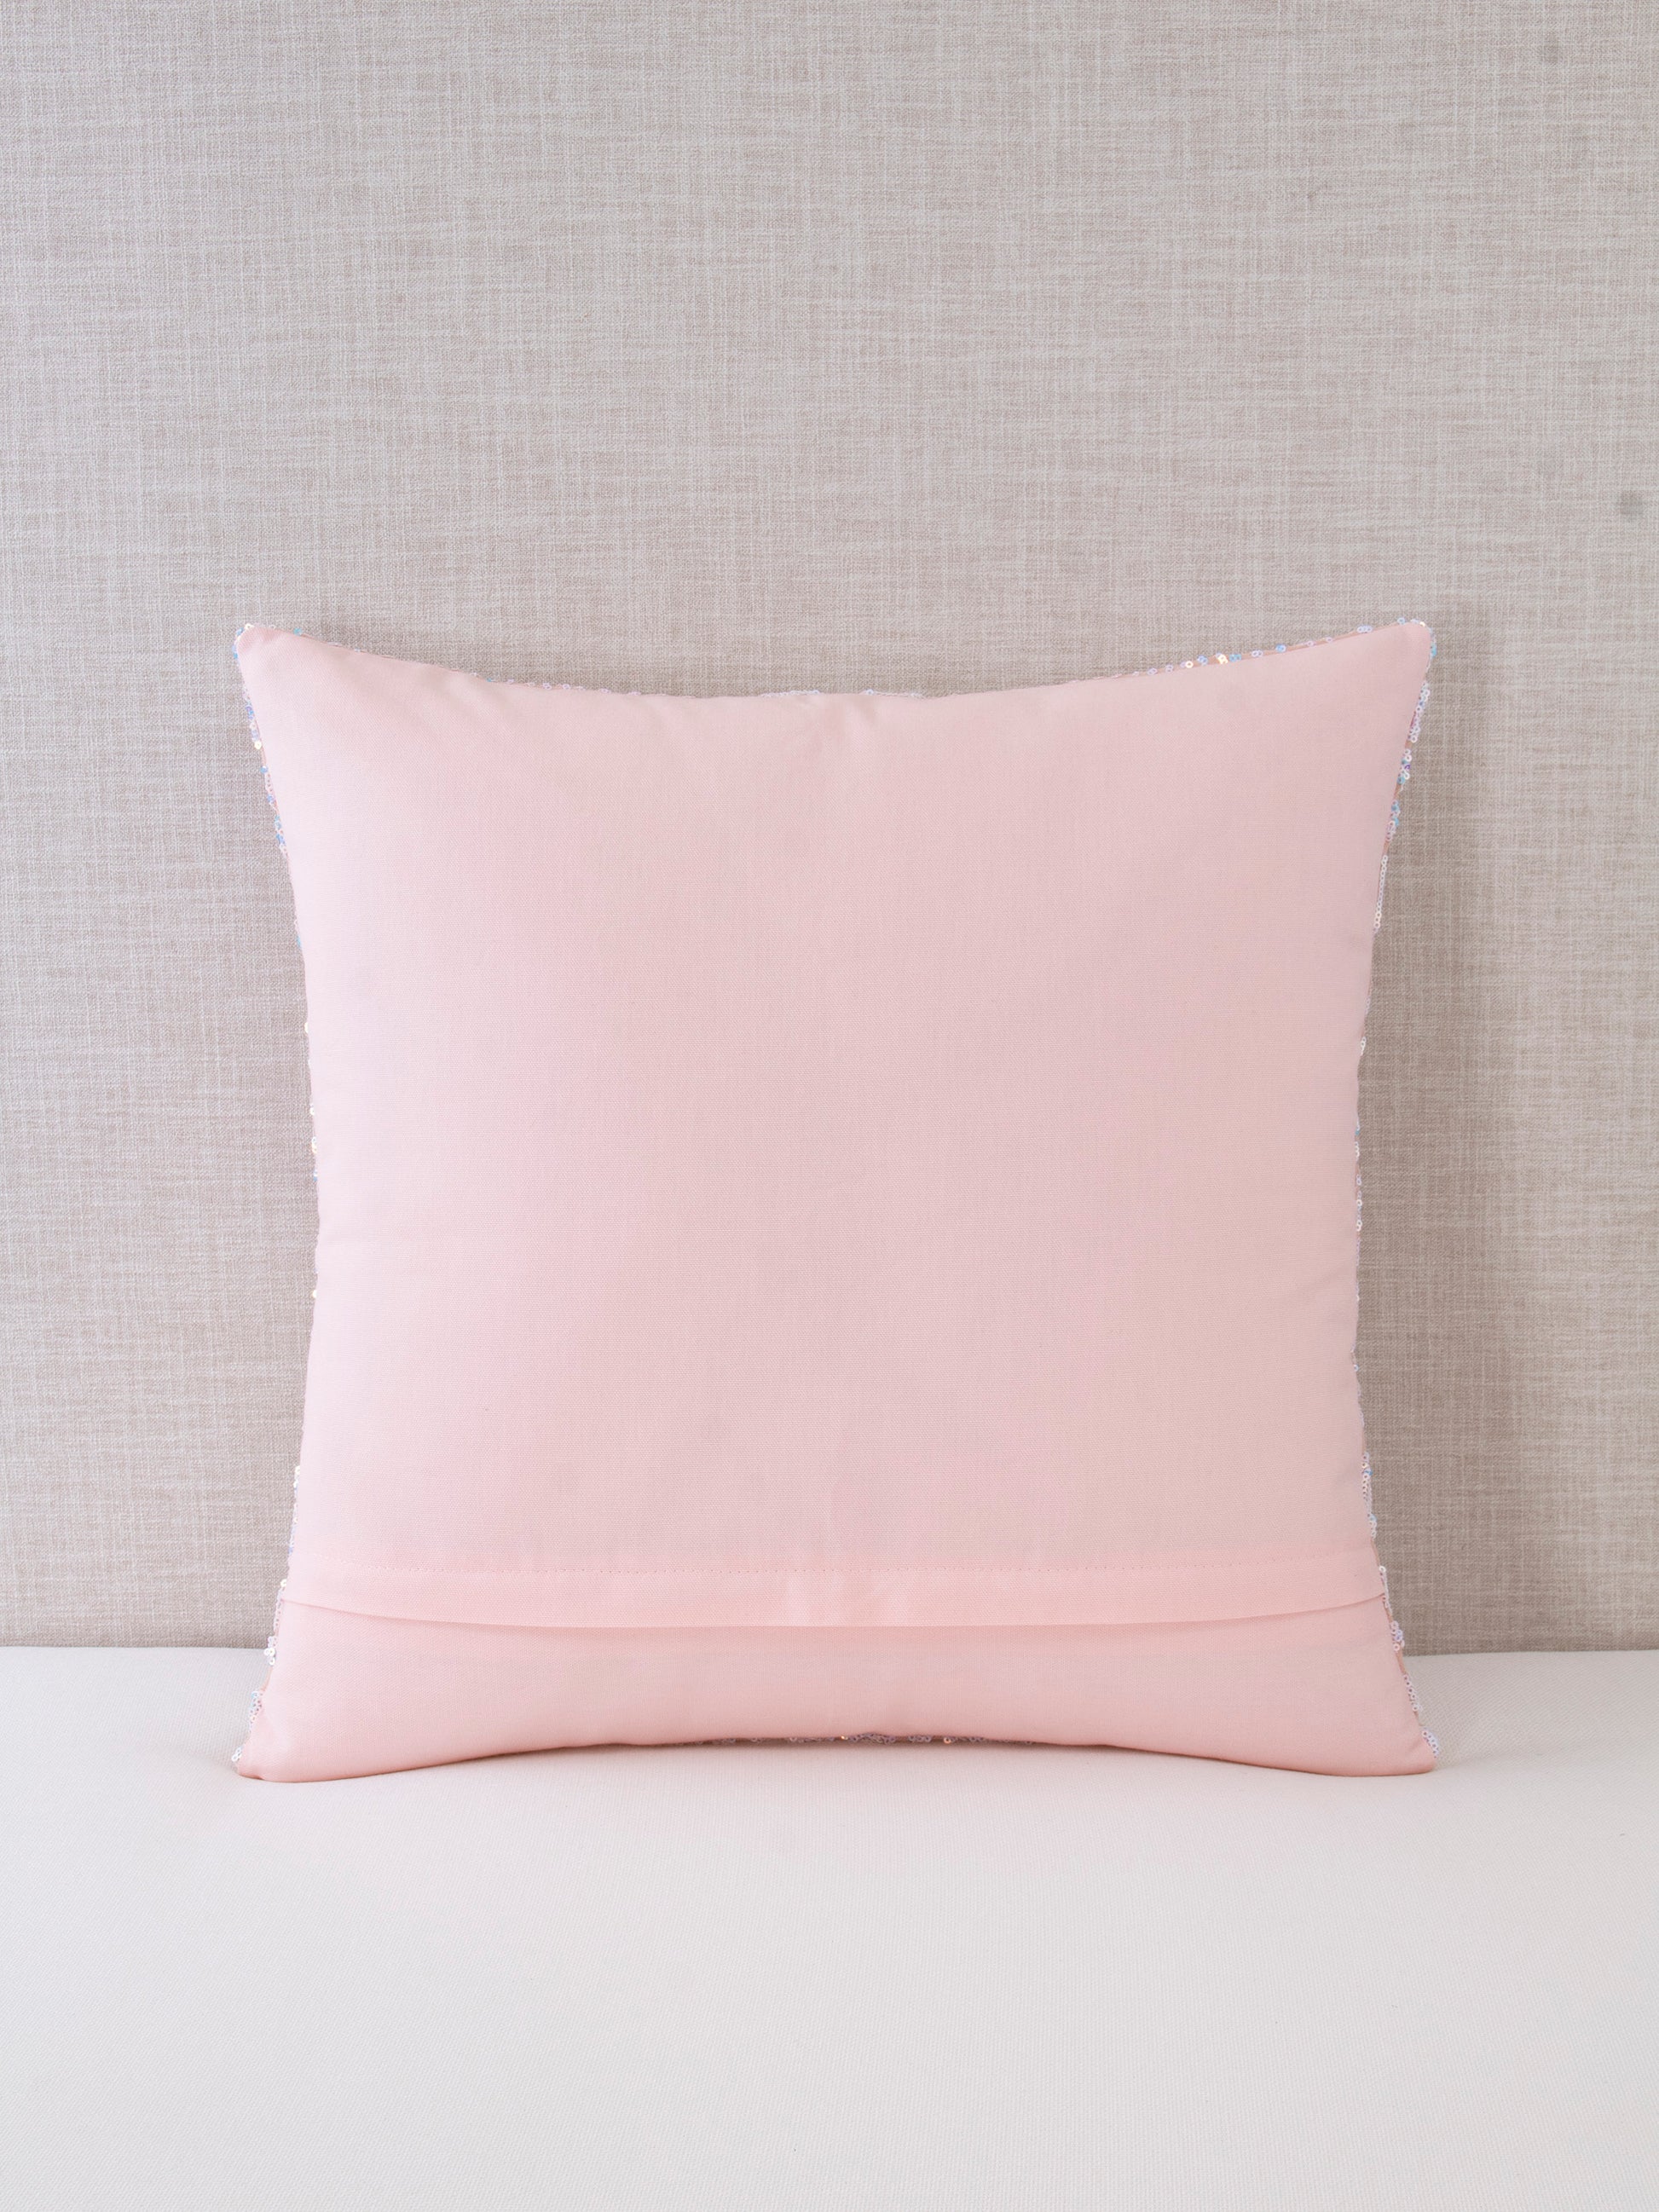 https://progiene.com/cdn/shop/products/PacoRogiene_HOME_Light_Pink_Iridescent_Sequin_Pillow_20x20_Throw_Pillow_BACK_1946x.jpg?v=1645825526